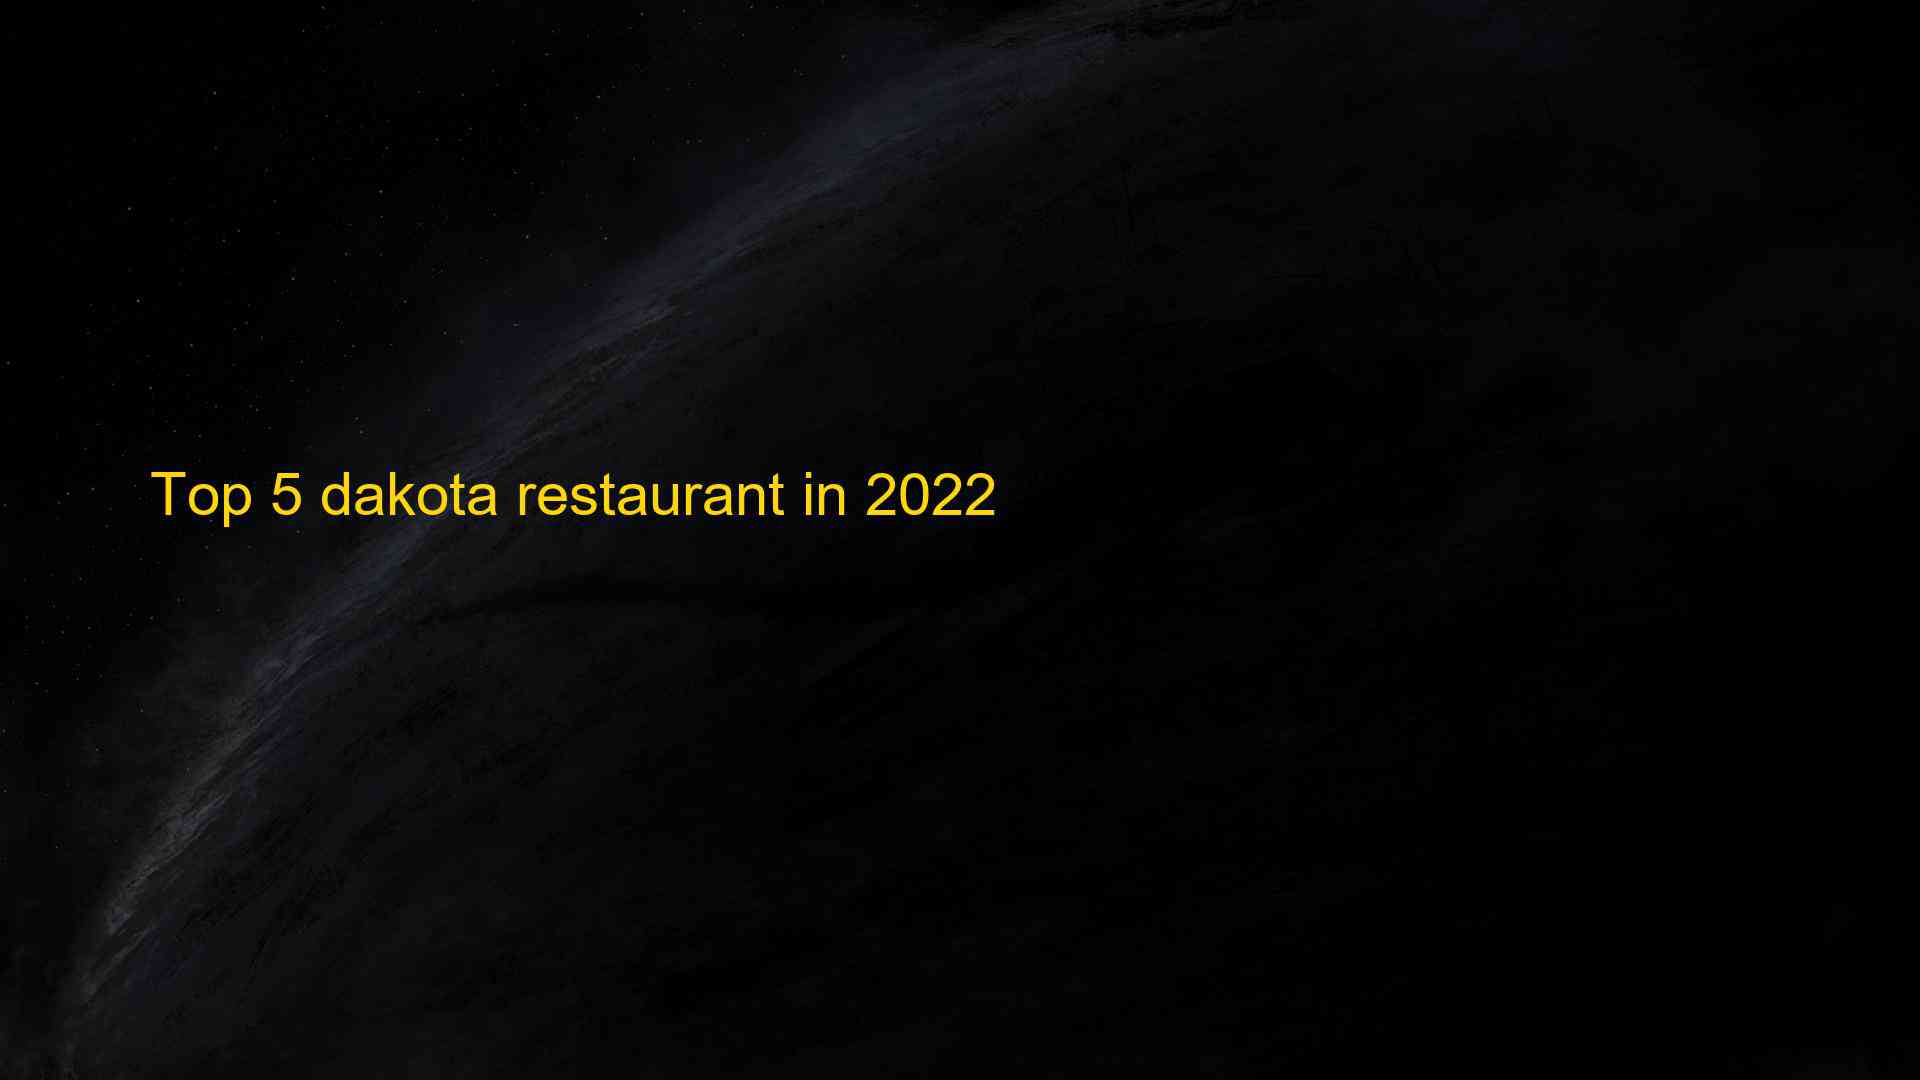 Top 5 dakota restaurant in 2022 1663536166